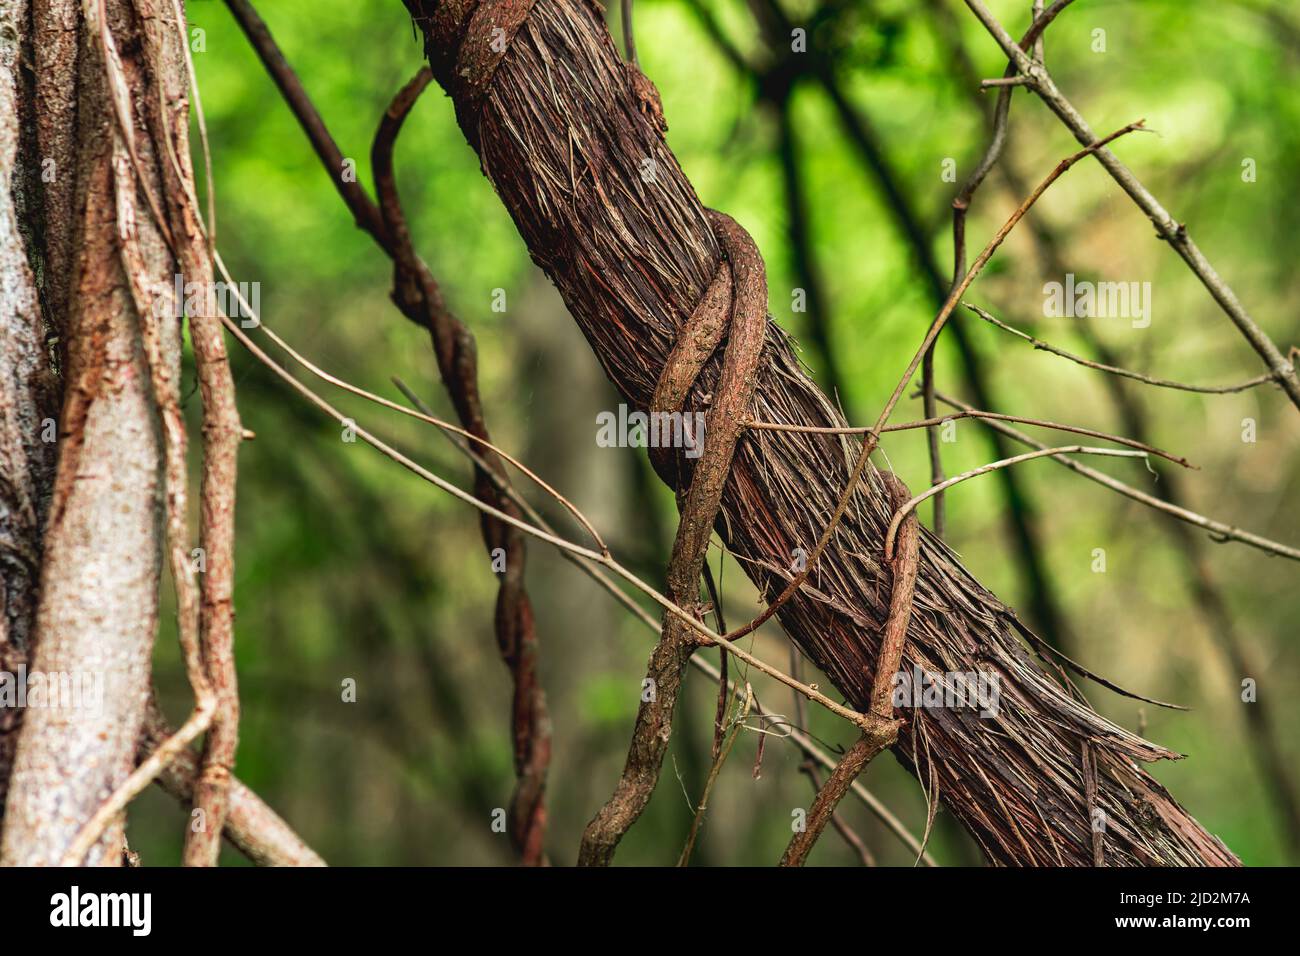 steli di arrampicata e piante striscianti in un vicino foresta subtropicale Foto Stock